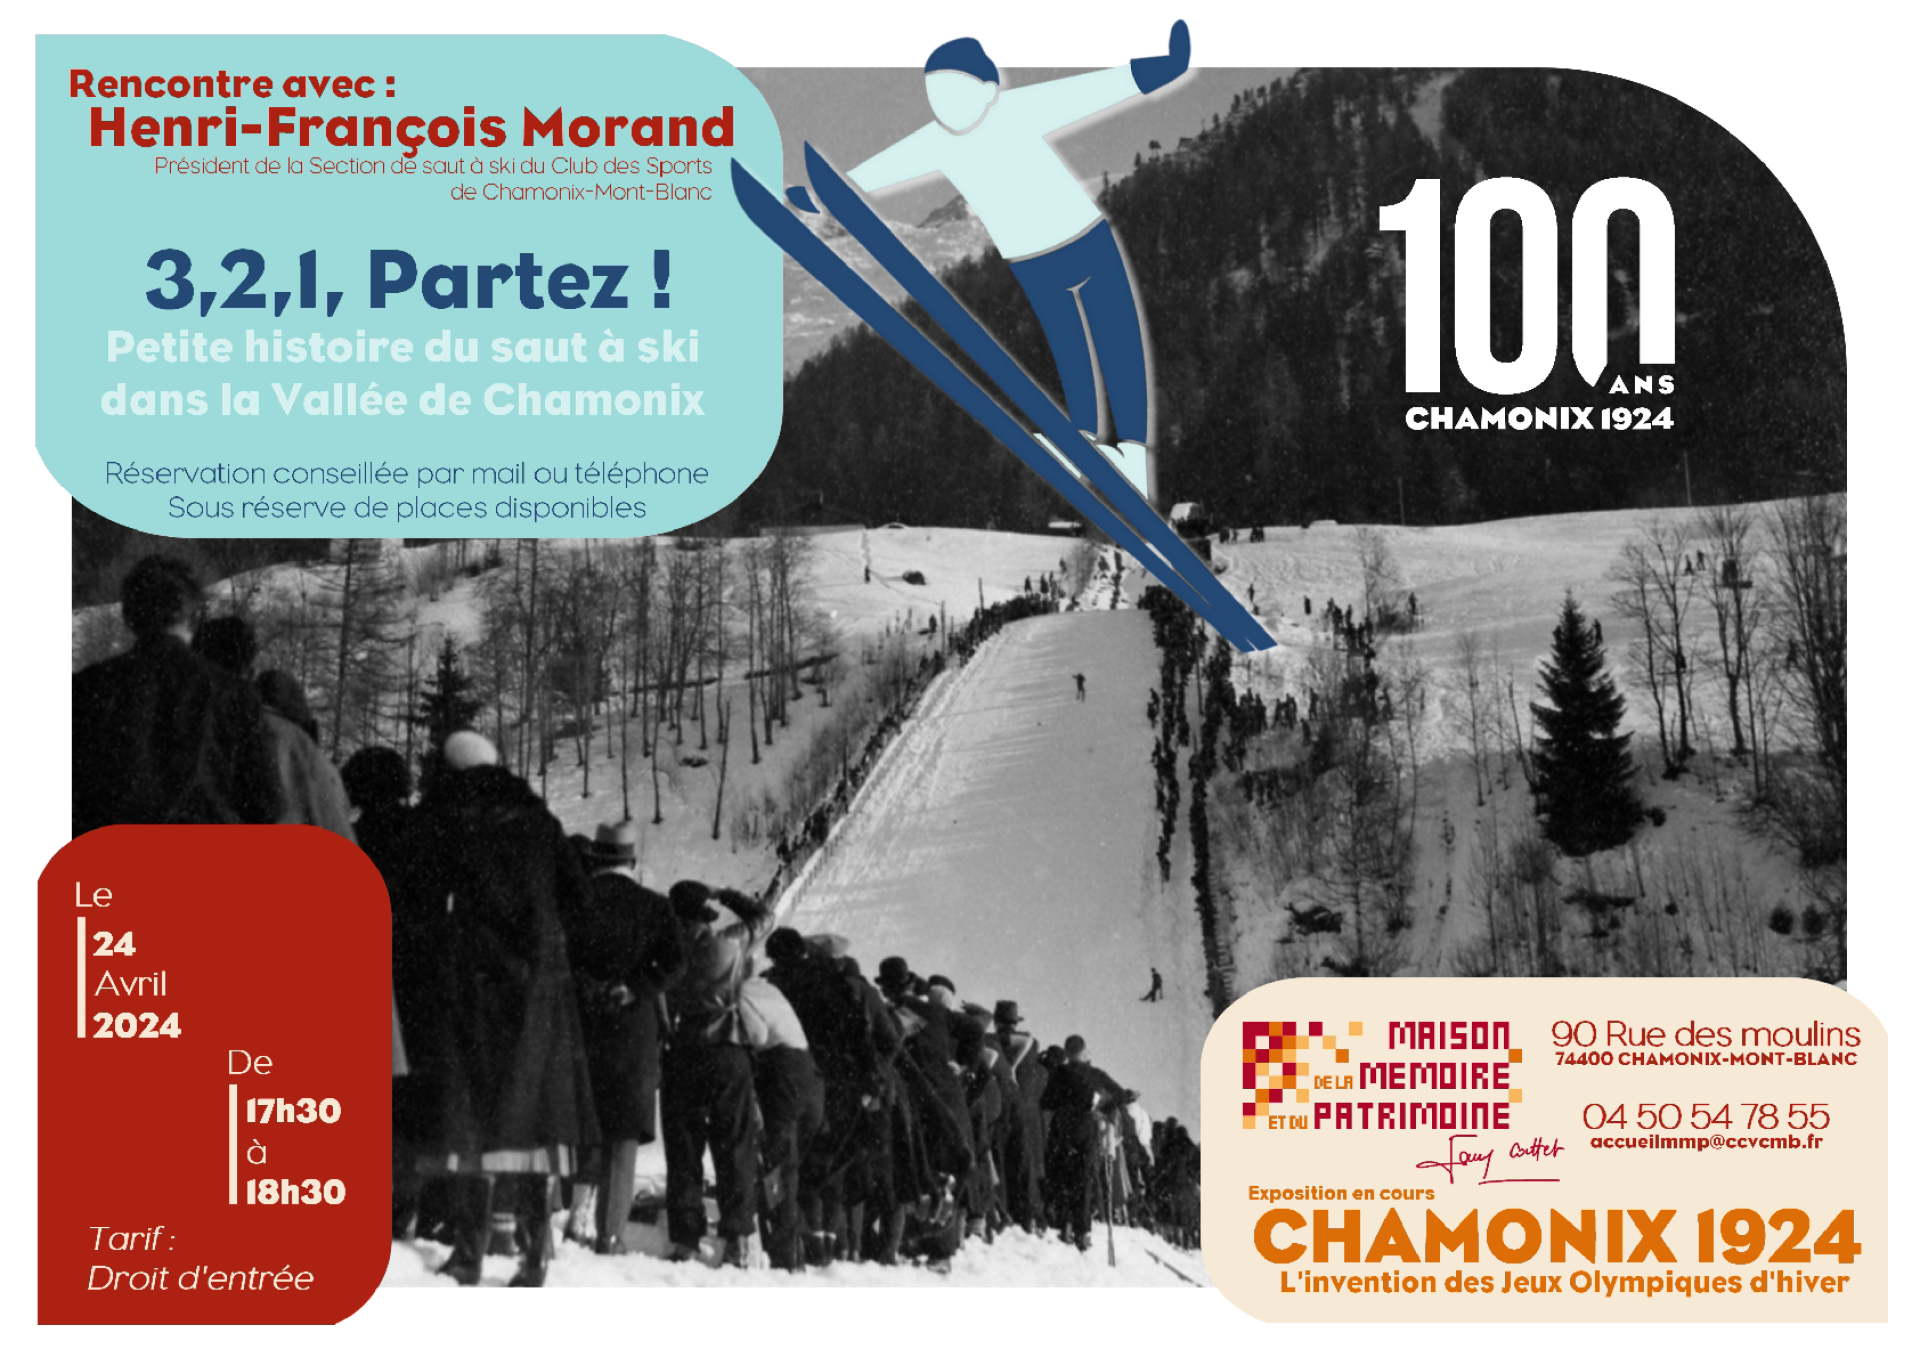 Affiche rencontre 3,2,1, Partez ! Petite histoire du saut à ski dans la Vallée de Chamonix